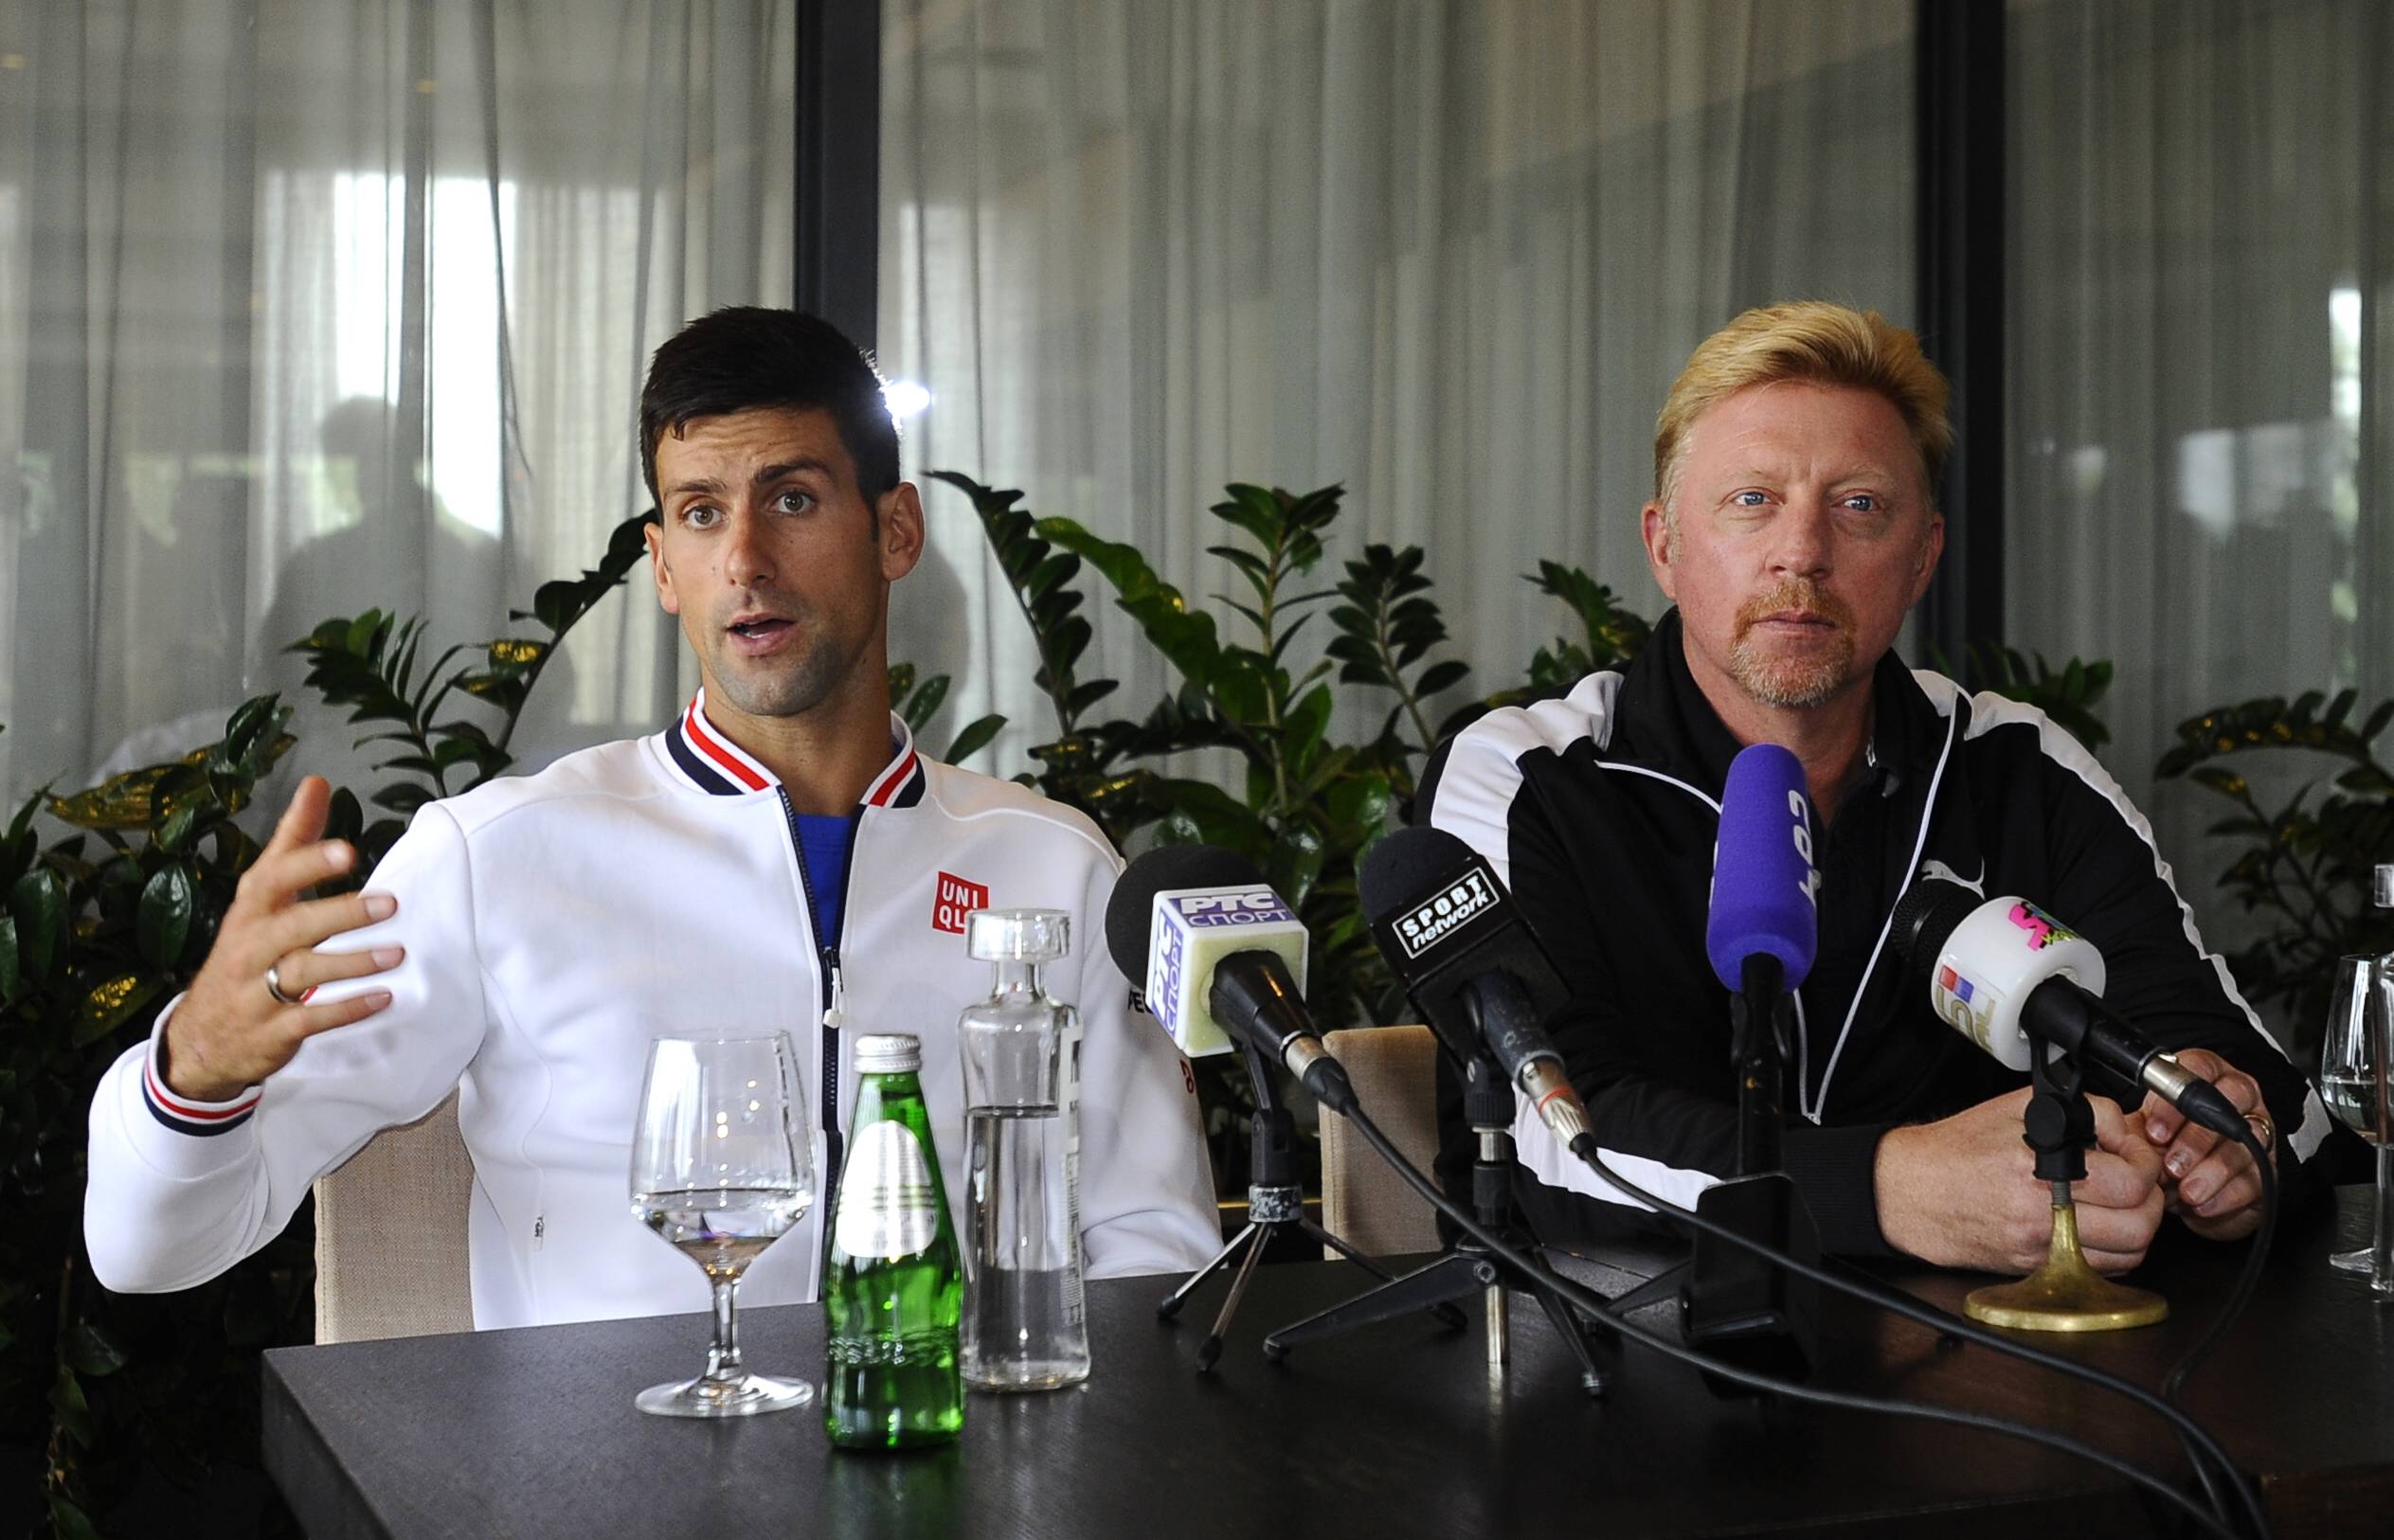 Da war er noch sein Trainer: Boris Becker und Novak Djokovic bei einer Pressekonferenz